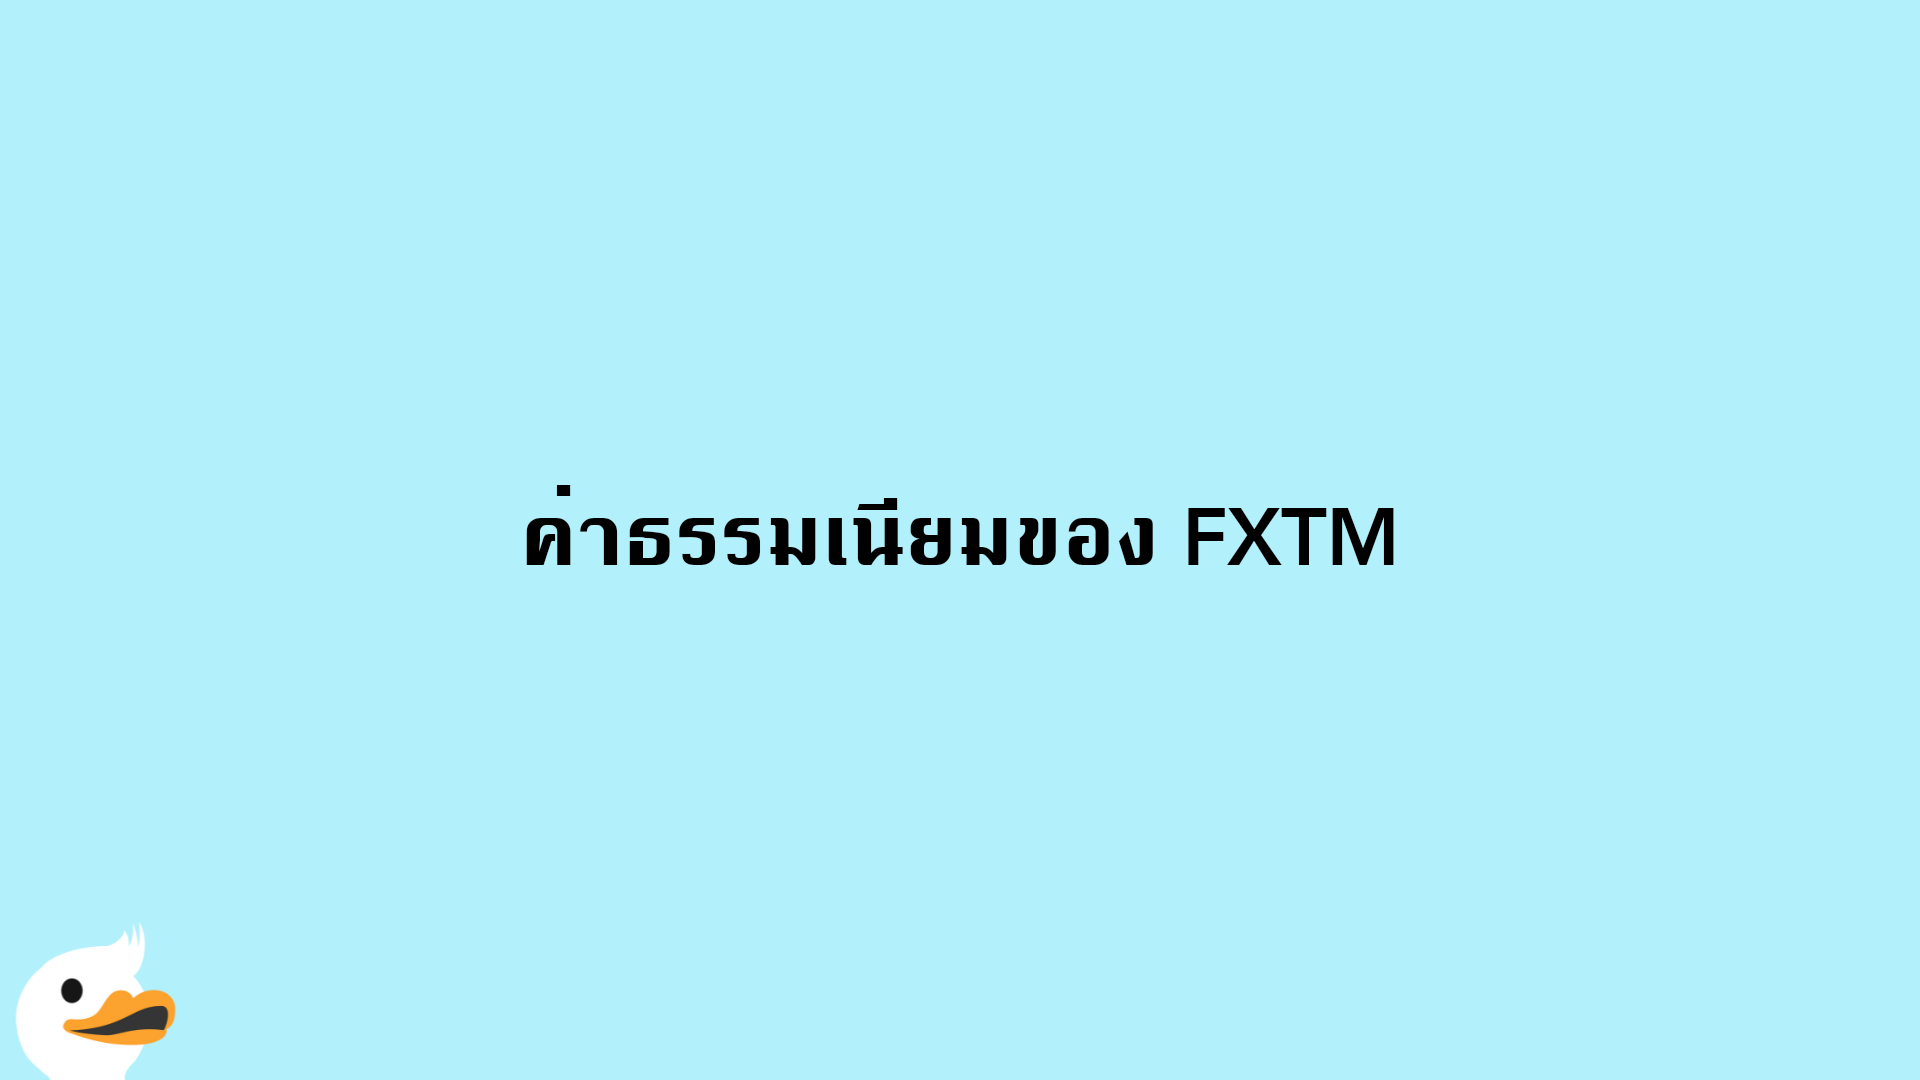 ค่าธรรมเนียมของ FXTM